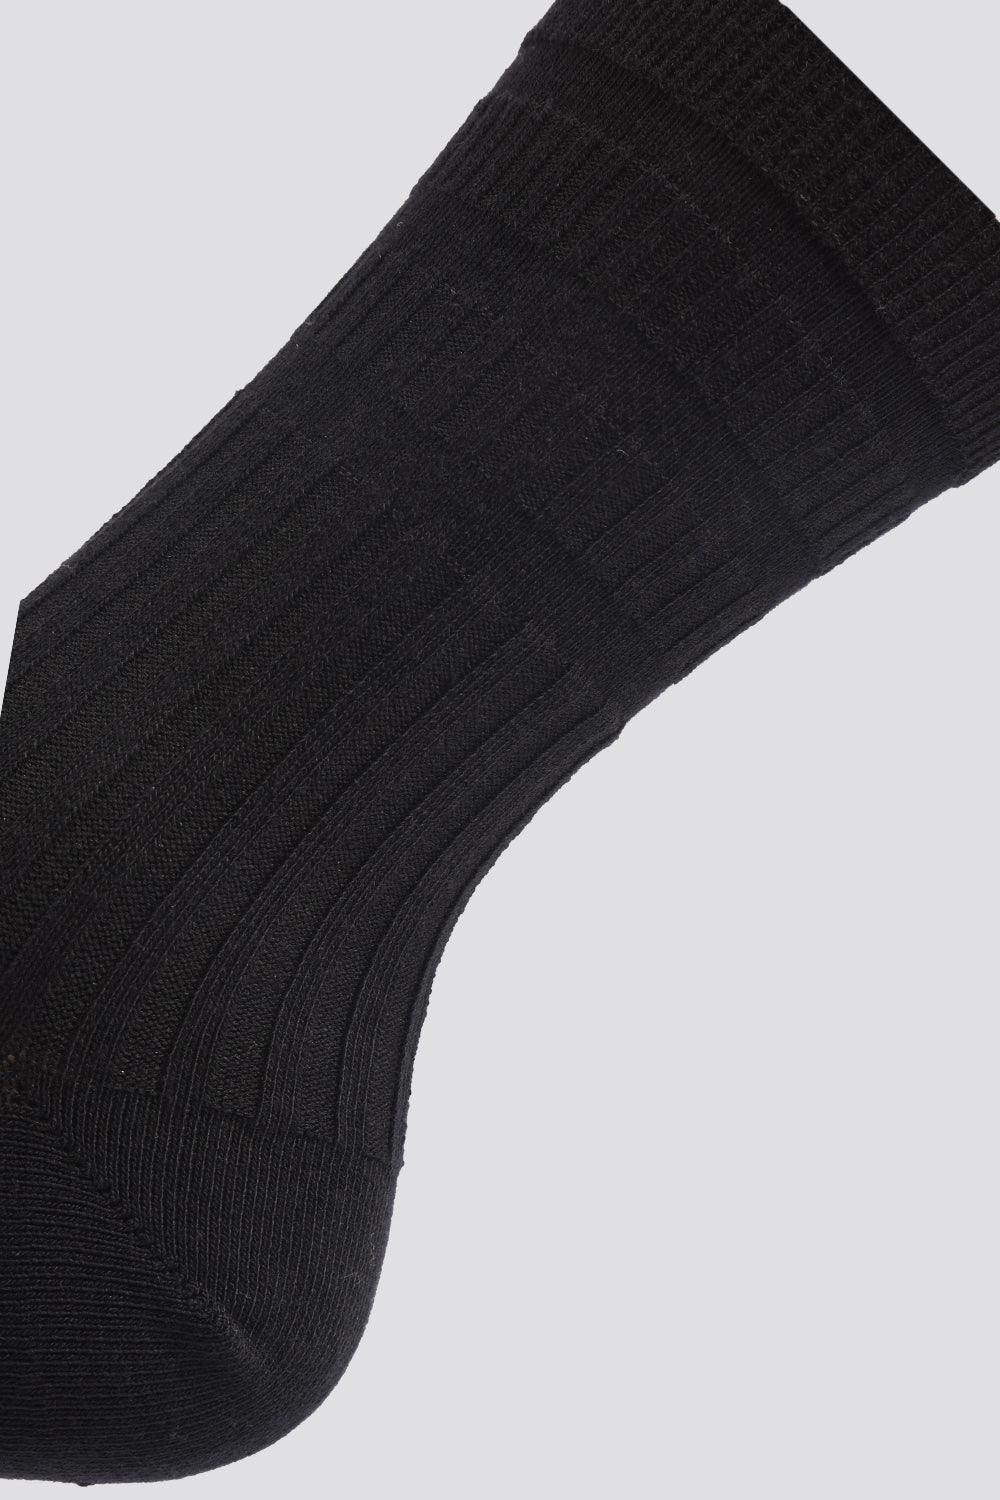 DELTA - מארז זוג גרביים גבוהות בצבע שחור - MASHBIR//365